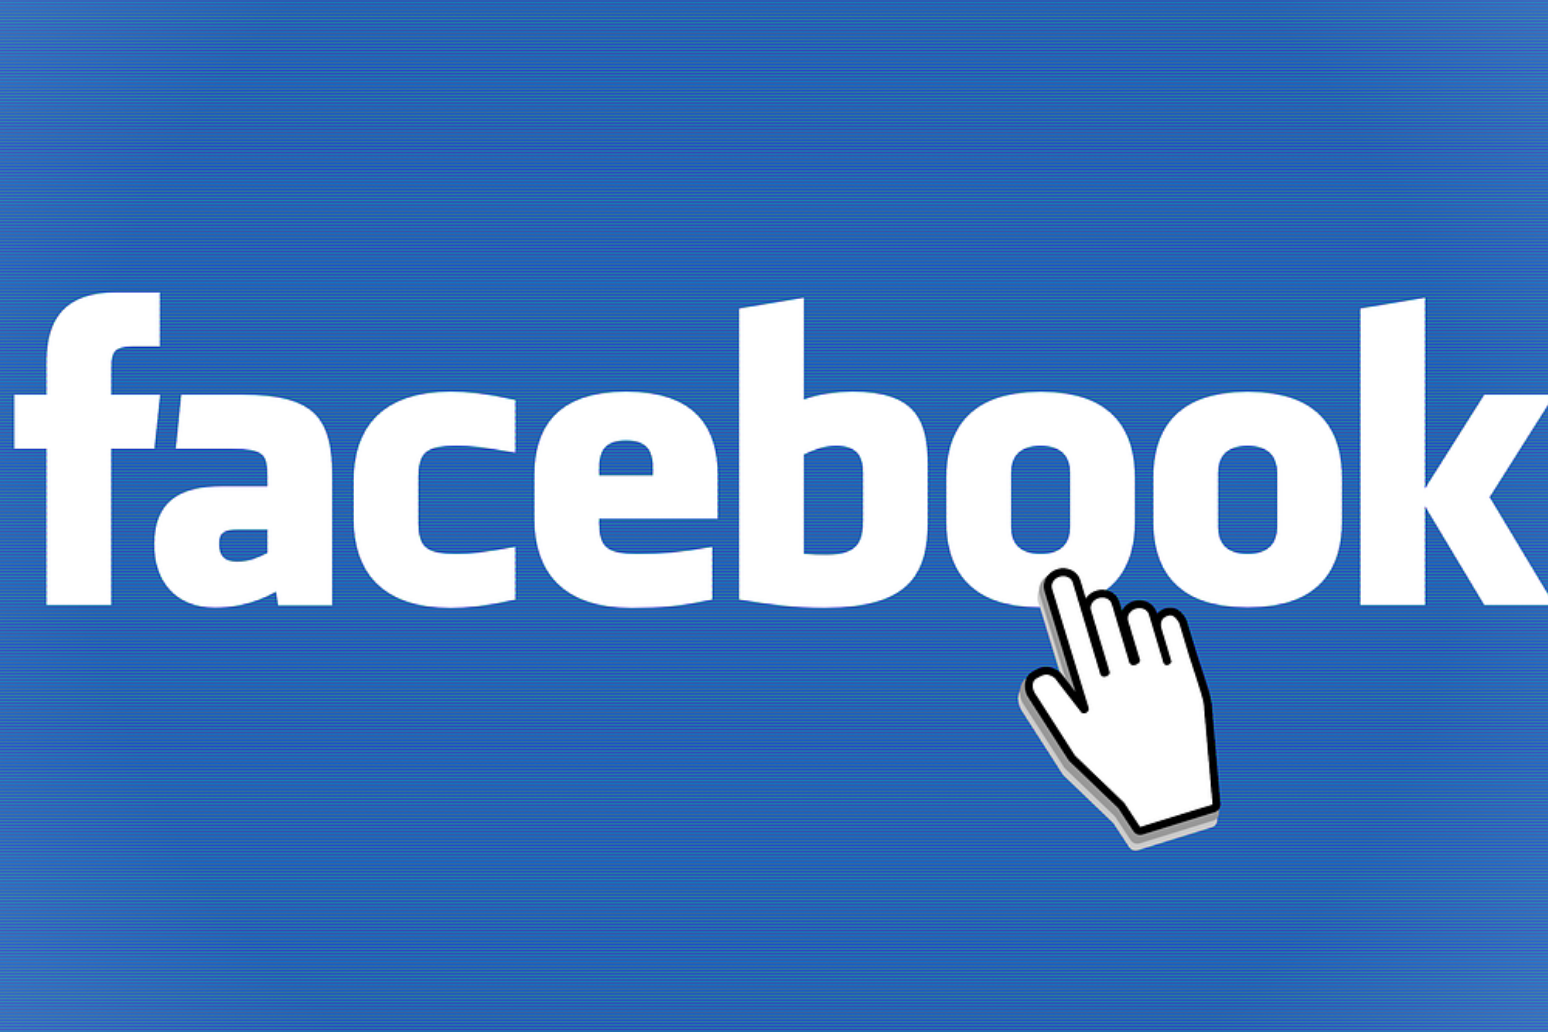 Facebook shares slide after allegations of data misuse 